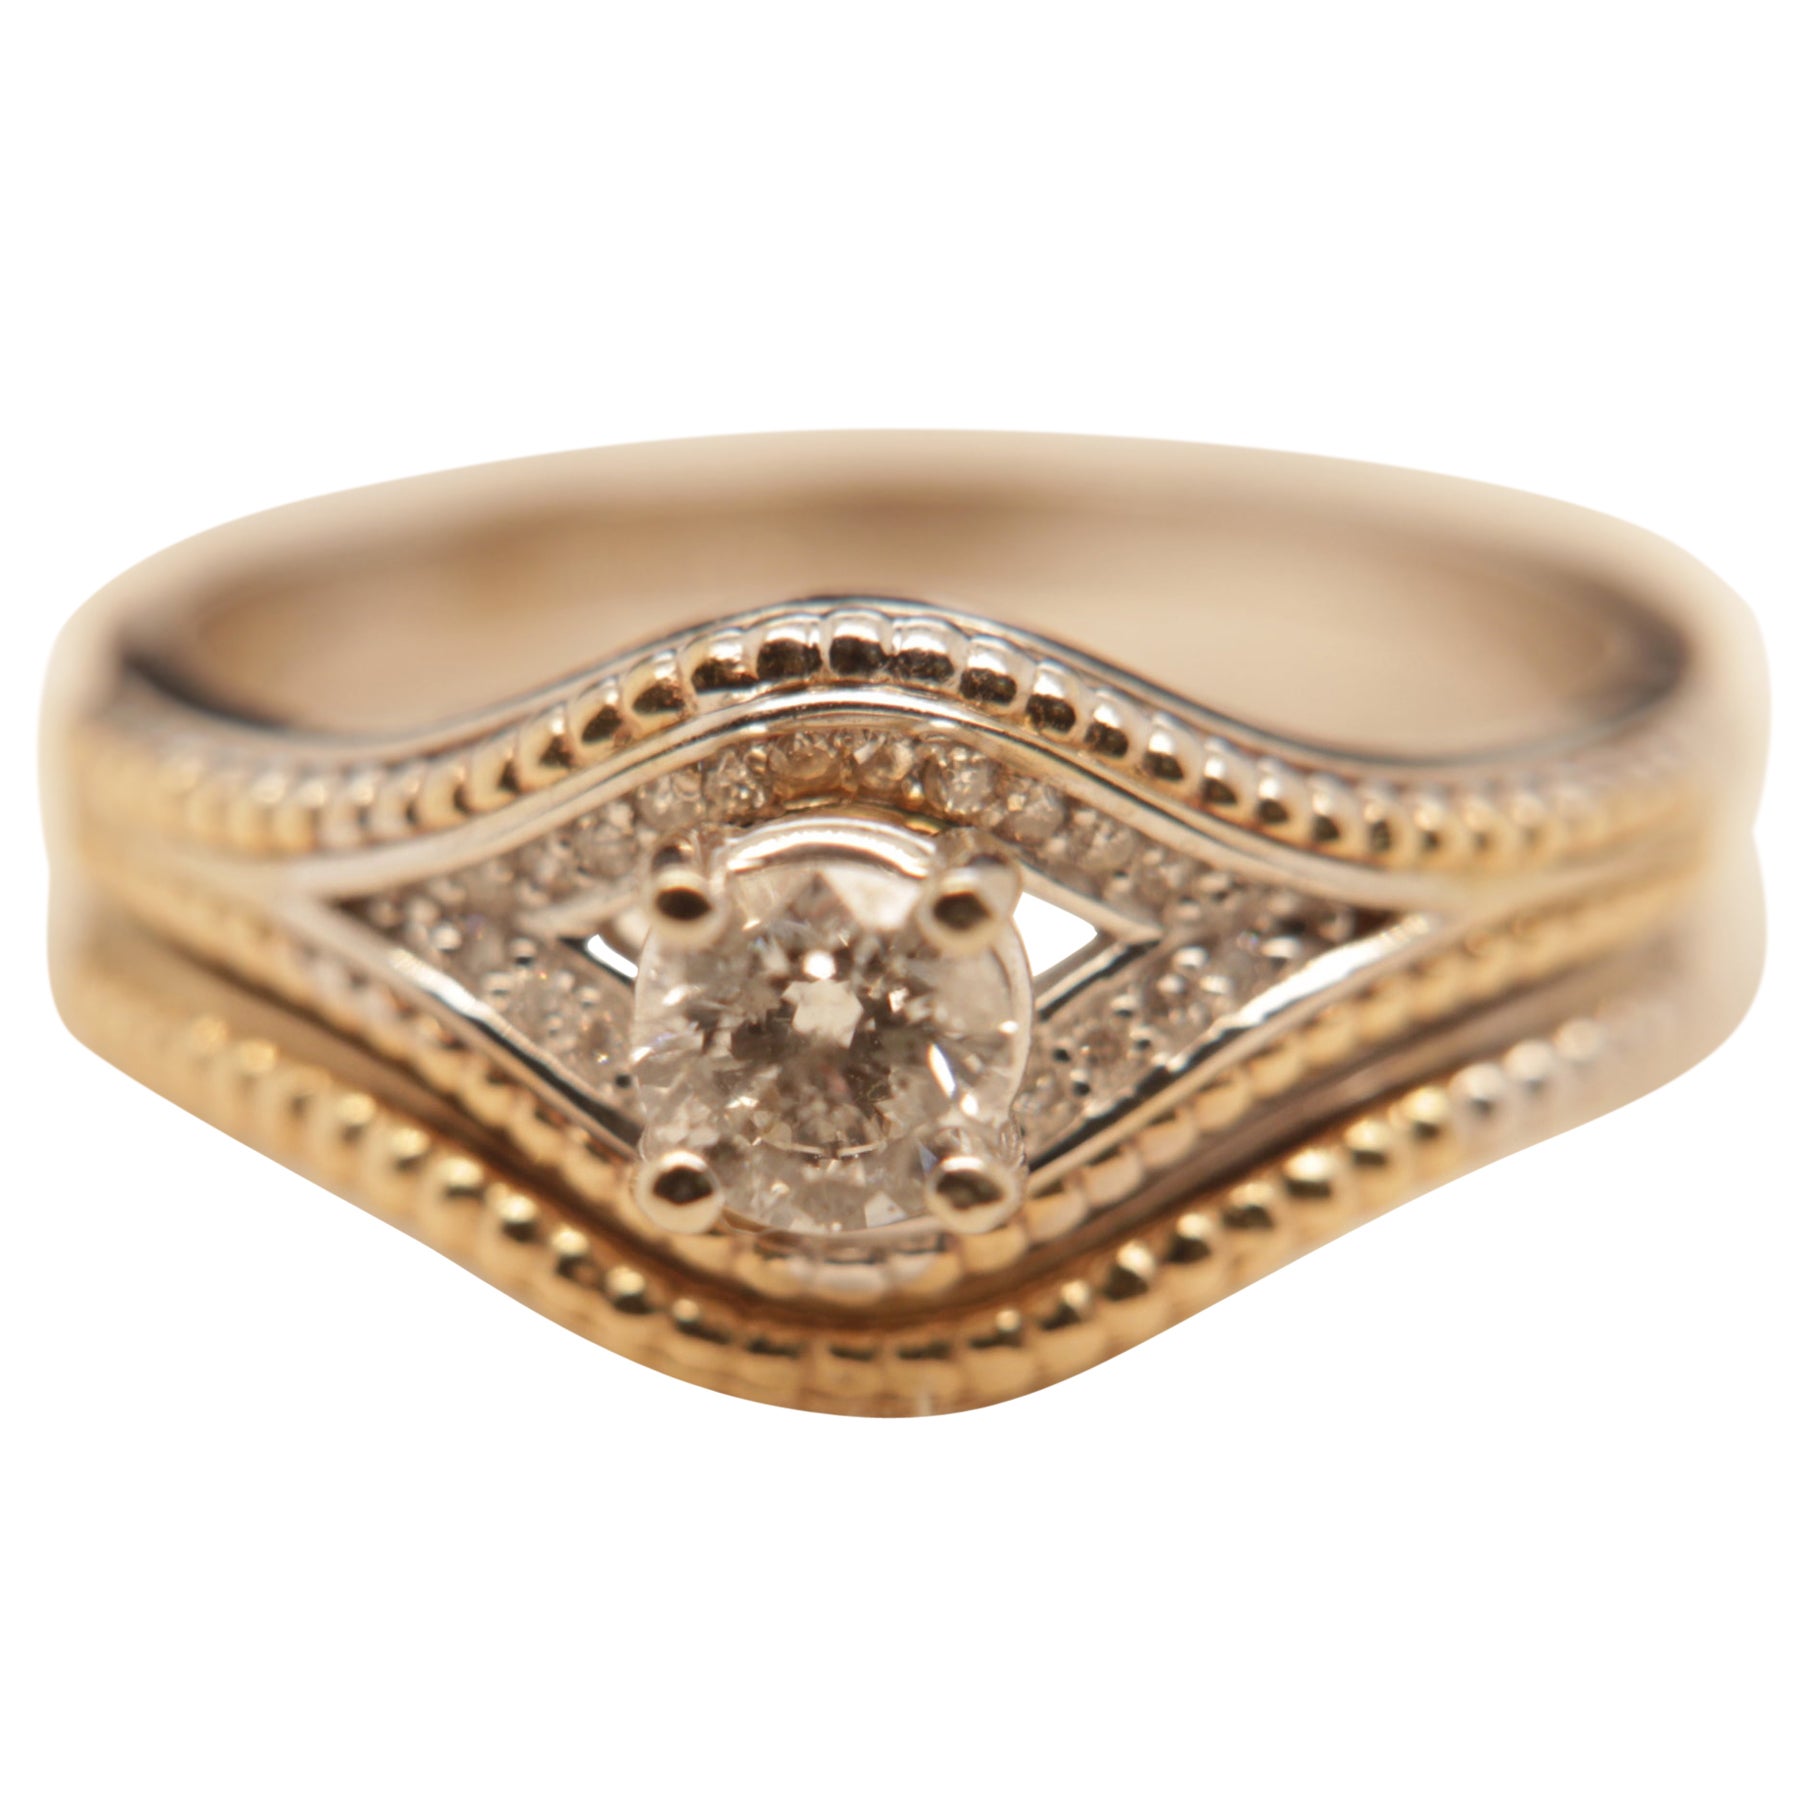 0.51 Carat Diamond Ring in 14 Karat Gold